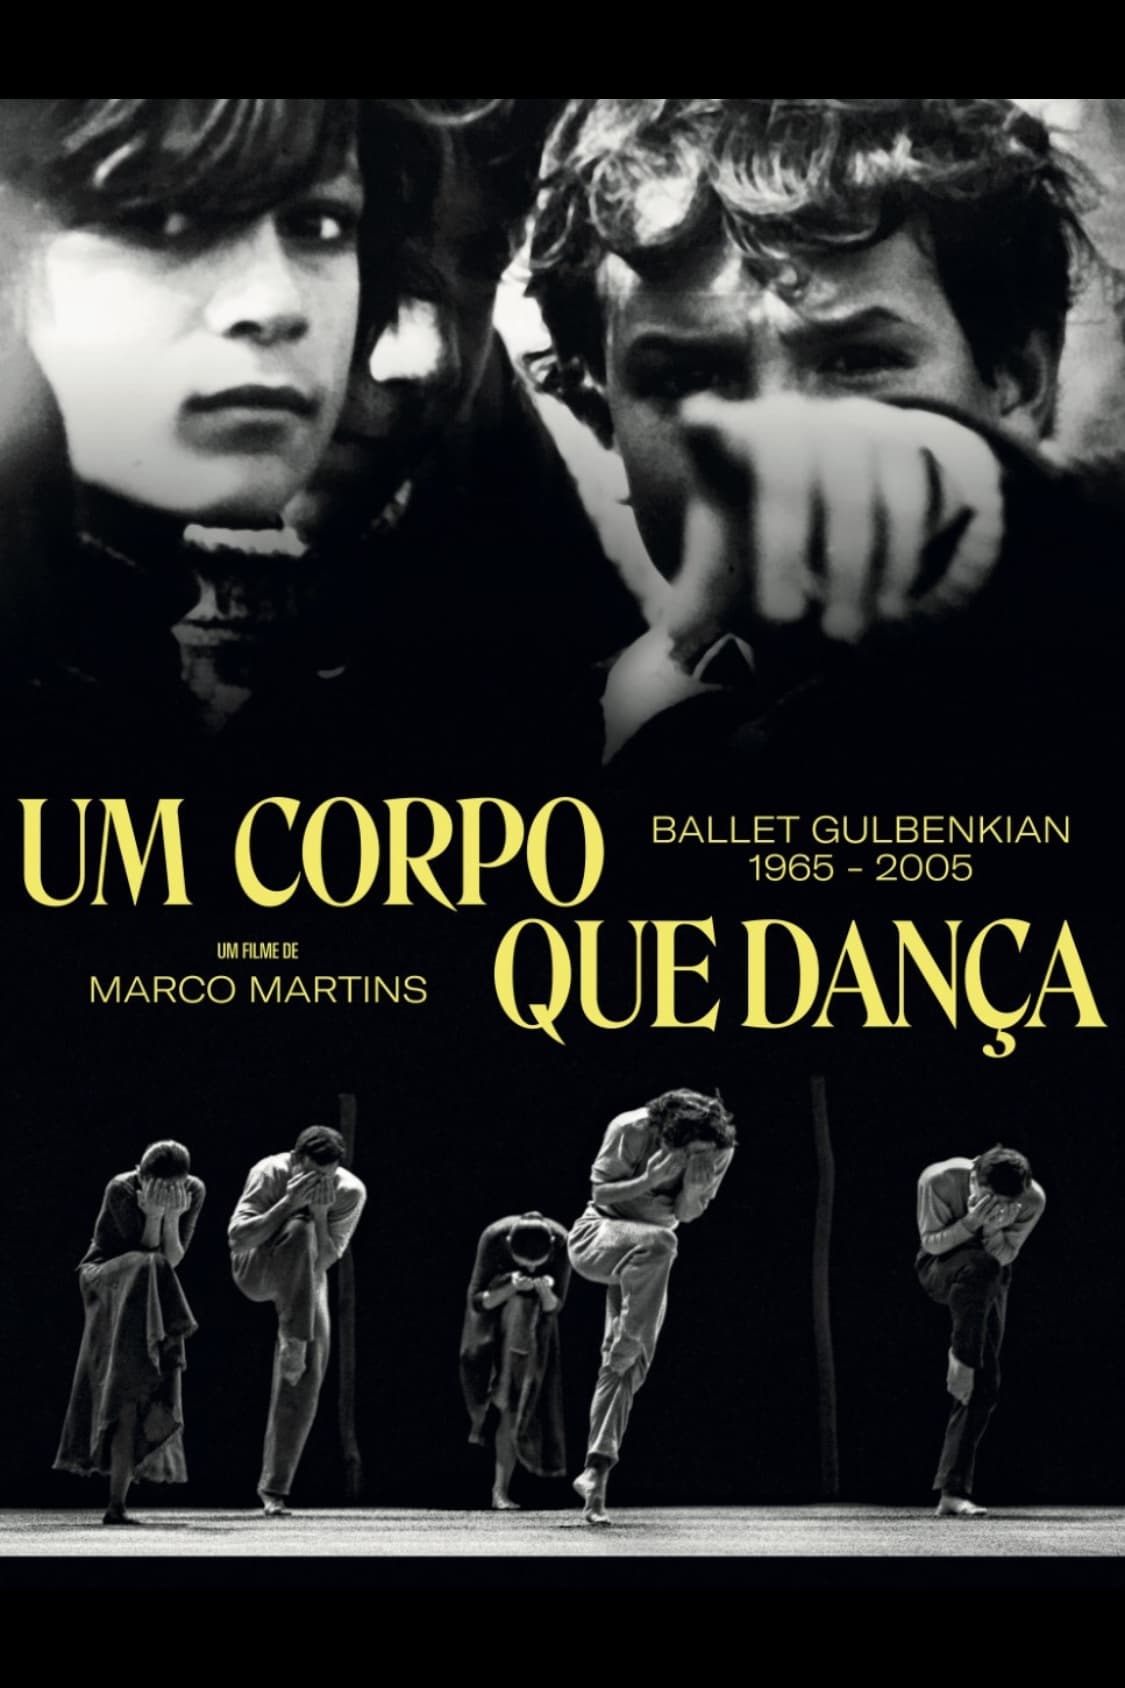 Um Corpo que Dança - Ballet Gulbenkian 1965-2005